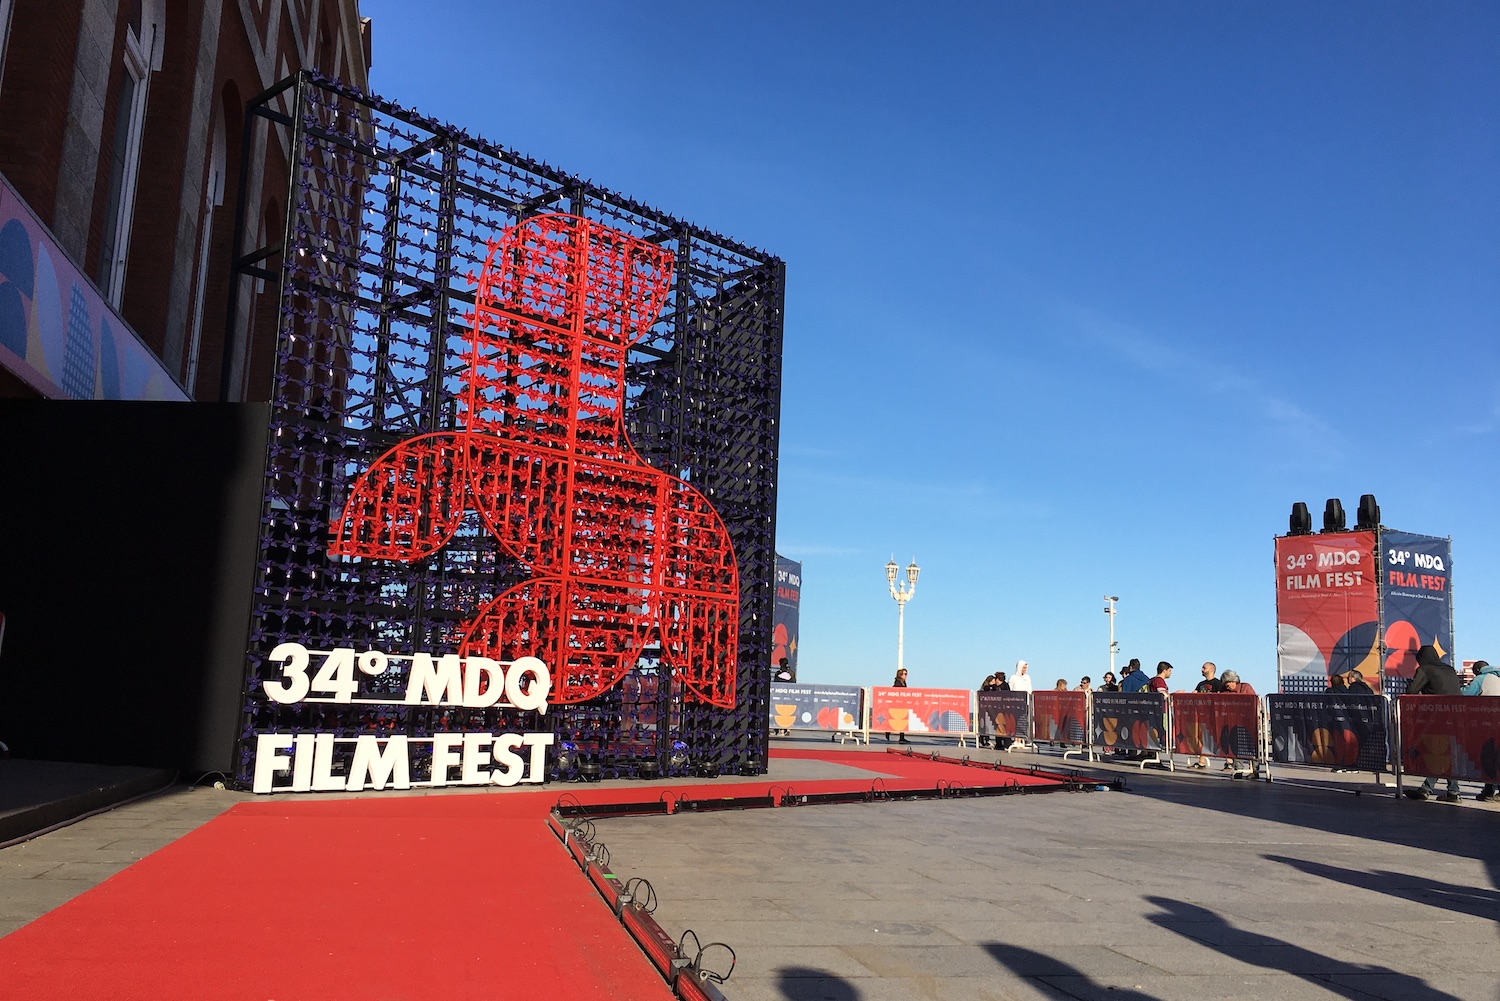 34 Mar del Plata Film Fest